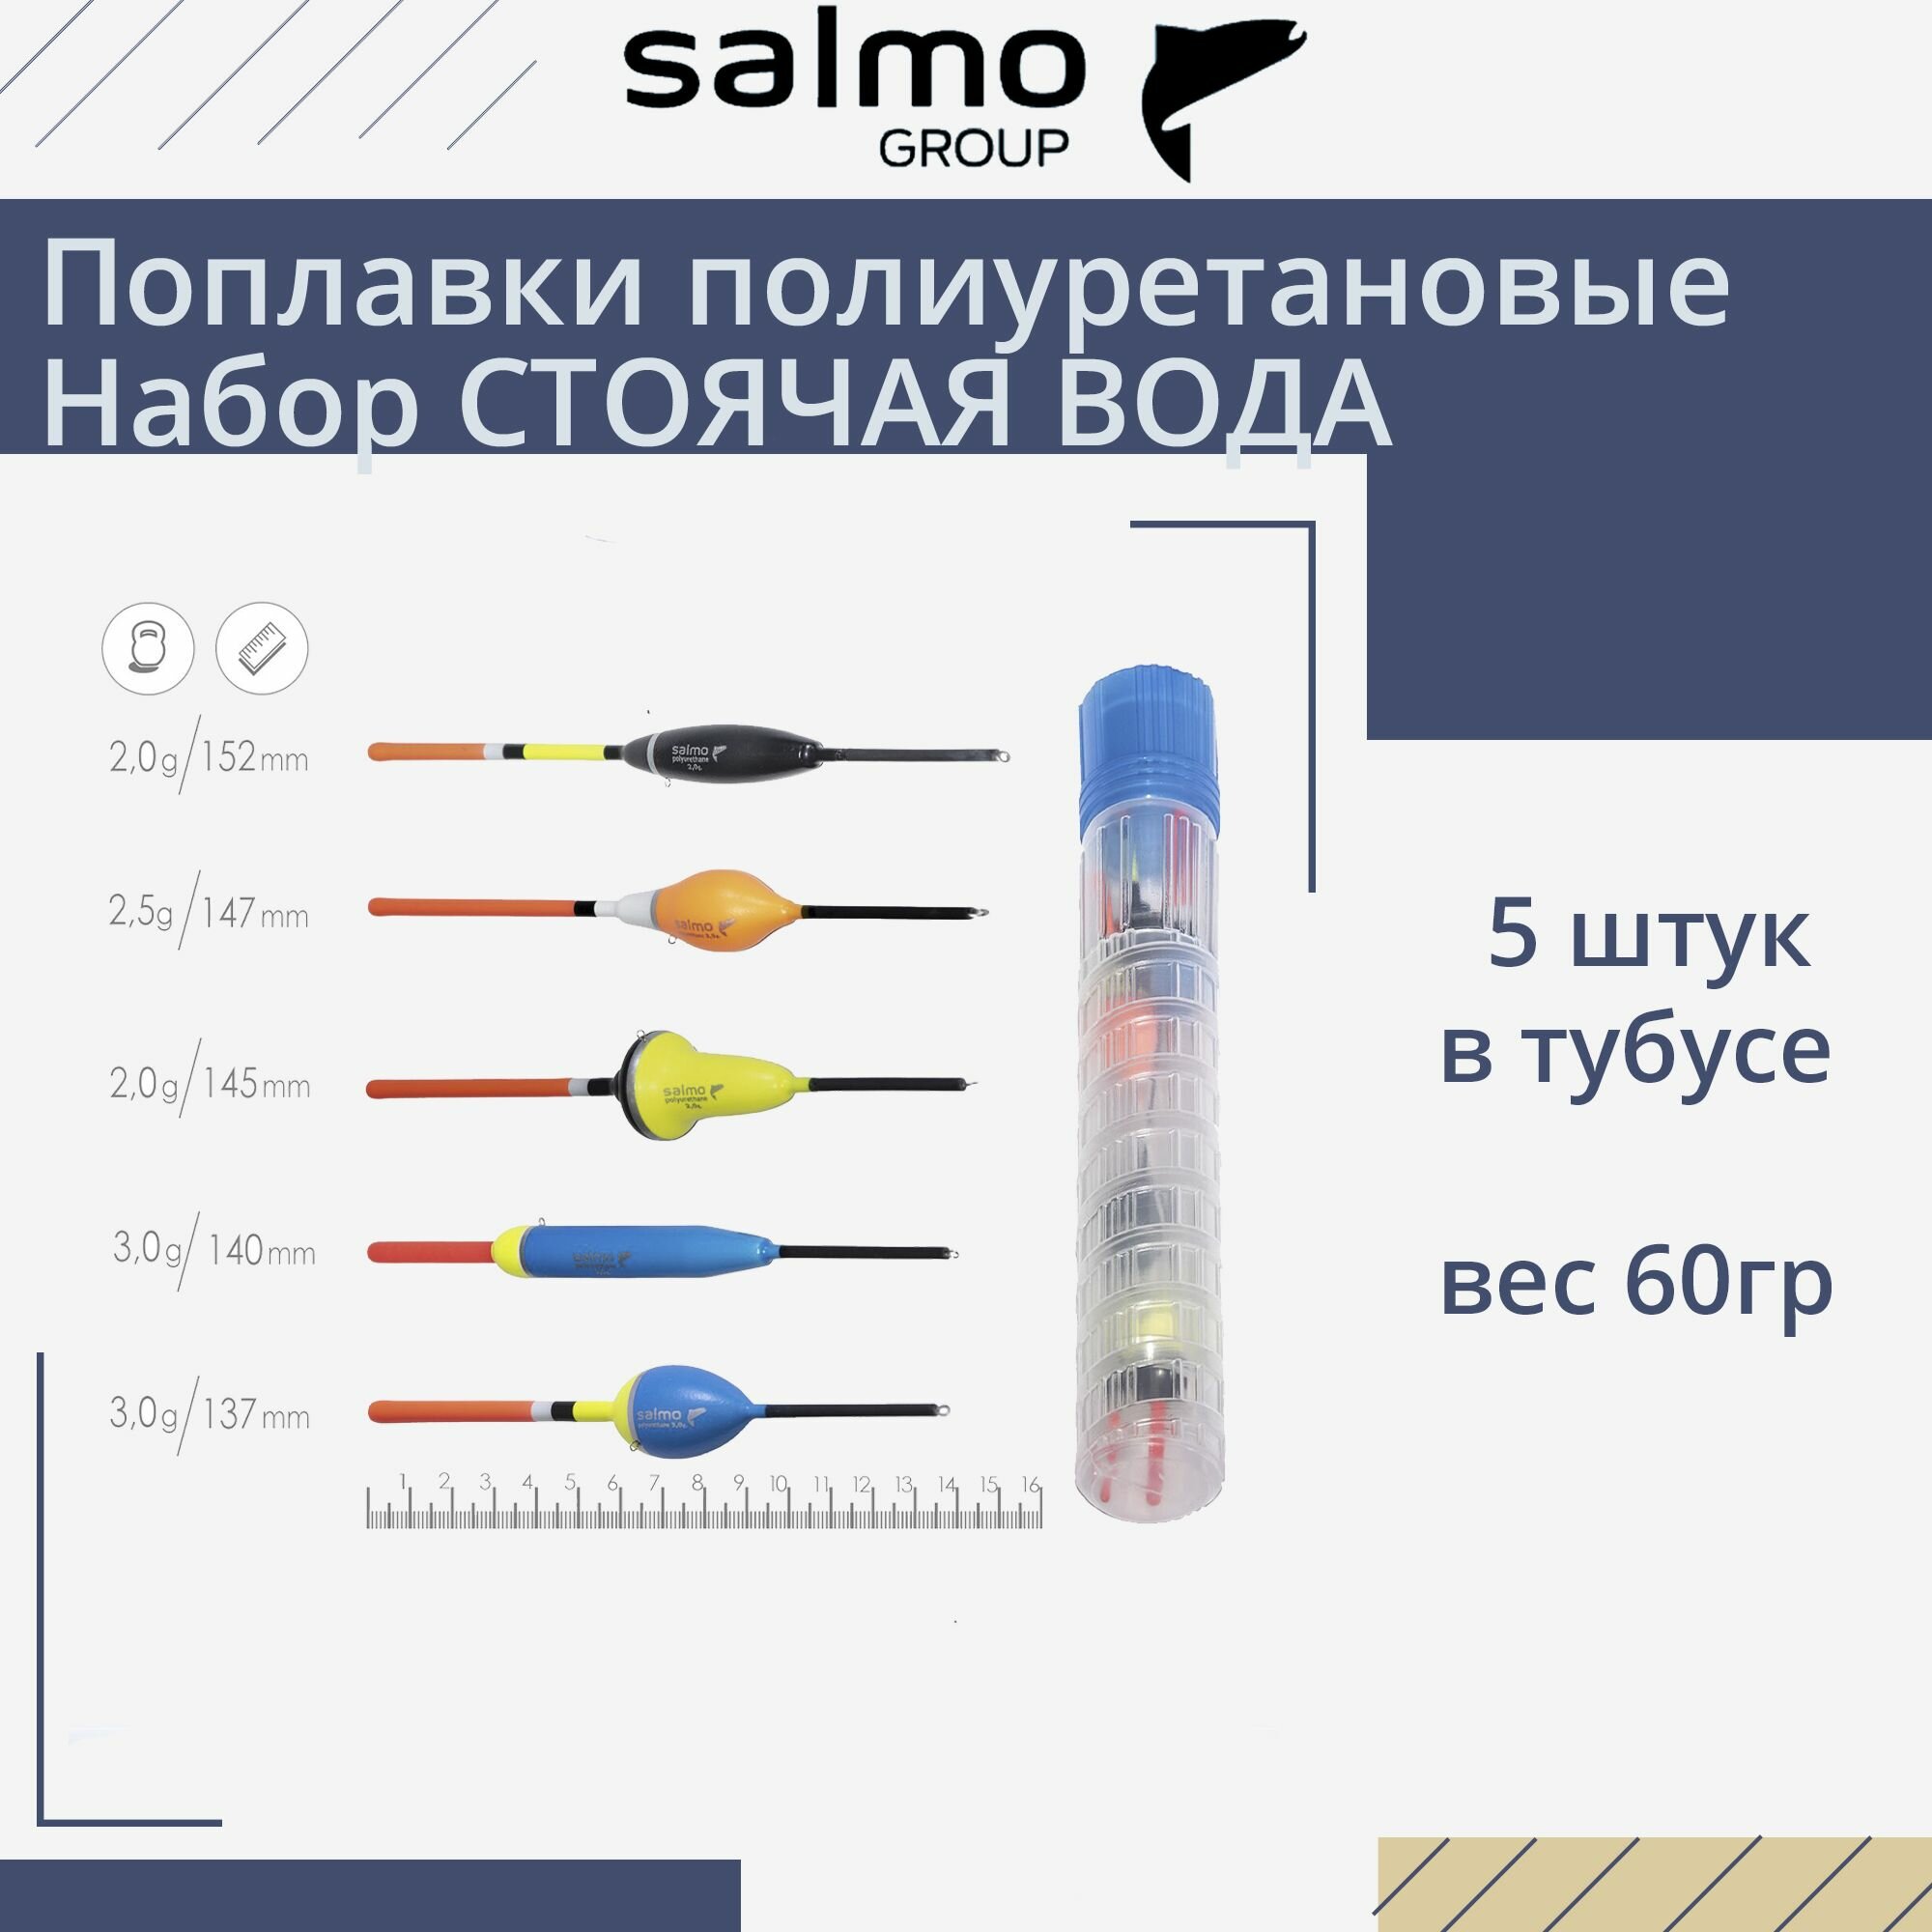 Поплавки полиуретановые Salmo PU стоячая вода, в тубусе 5 штук, набор, индивидуальная упаковка